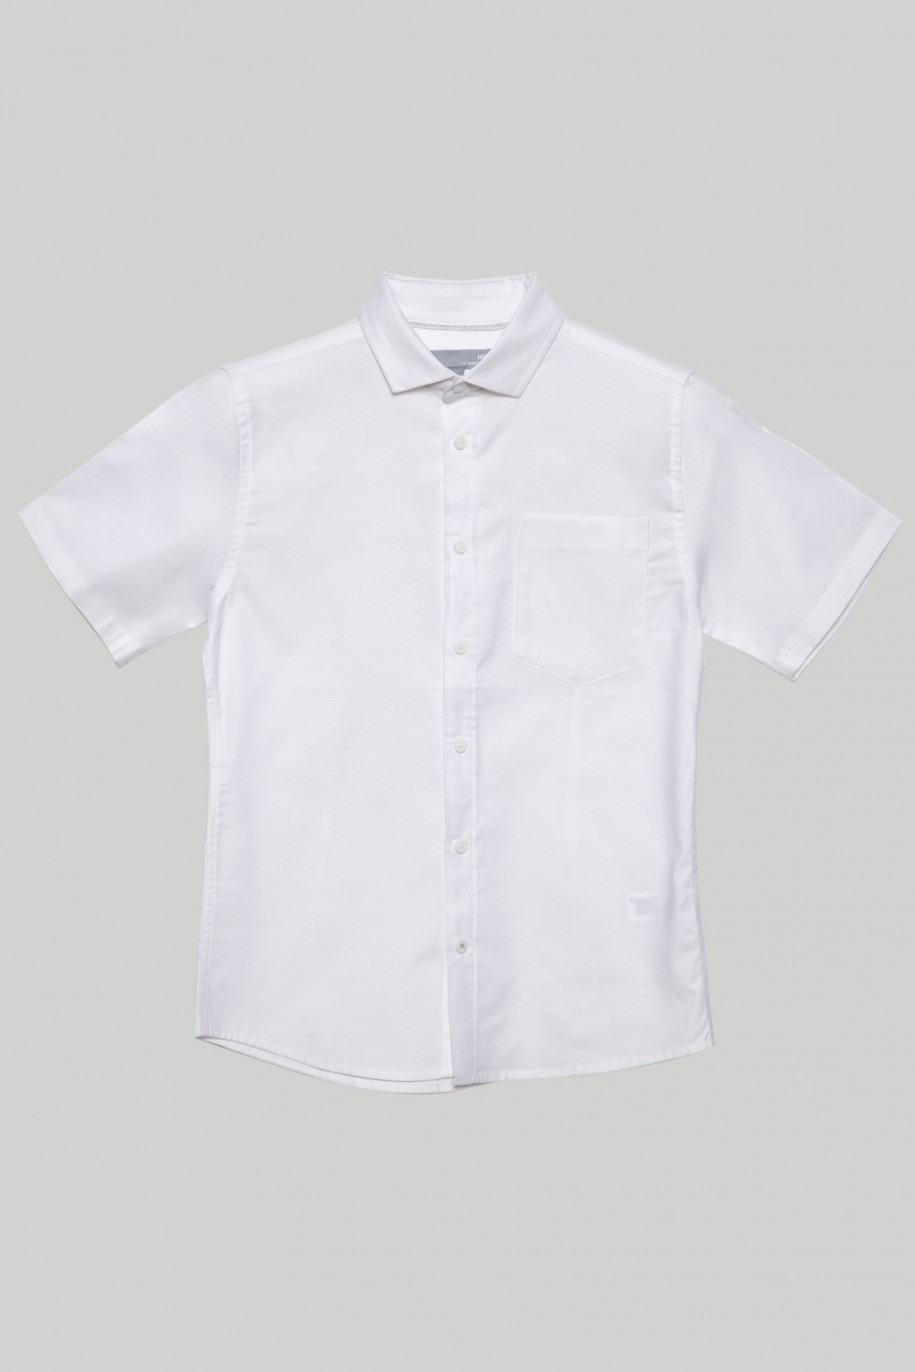 Biała klasyczna koszula z krótkim rękawem dla chłopaka - 29273